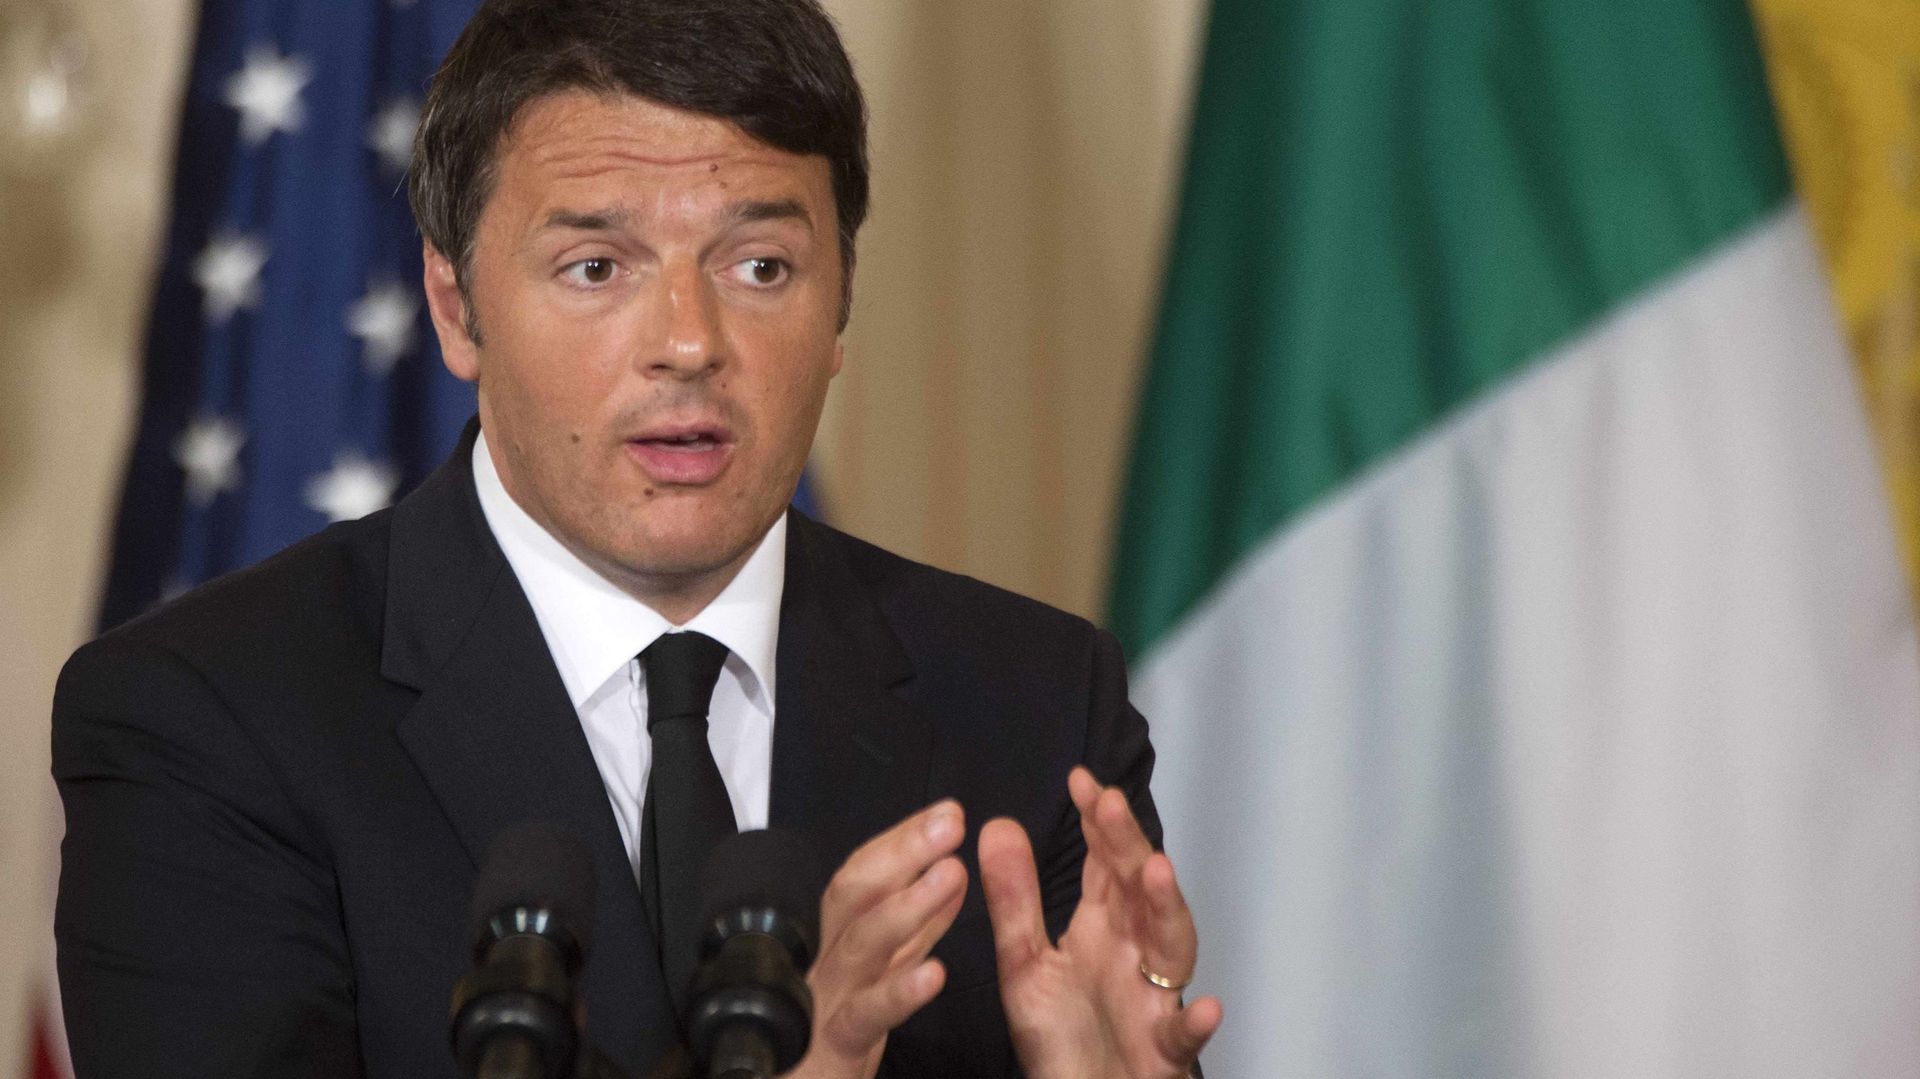 Matteo Renzi a confirmé lors d'une conférence de presse que 24 membres d'un réseau de passeurs avaient été arrêtés lundi matin.